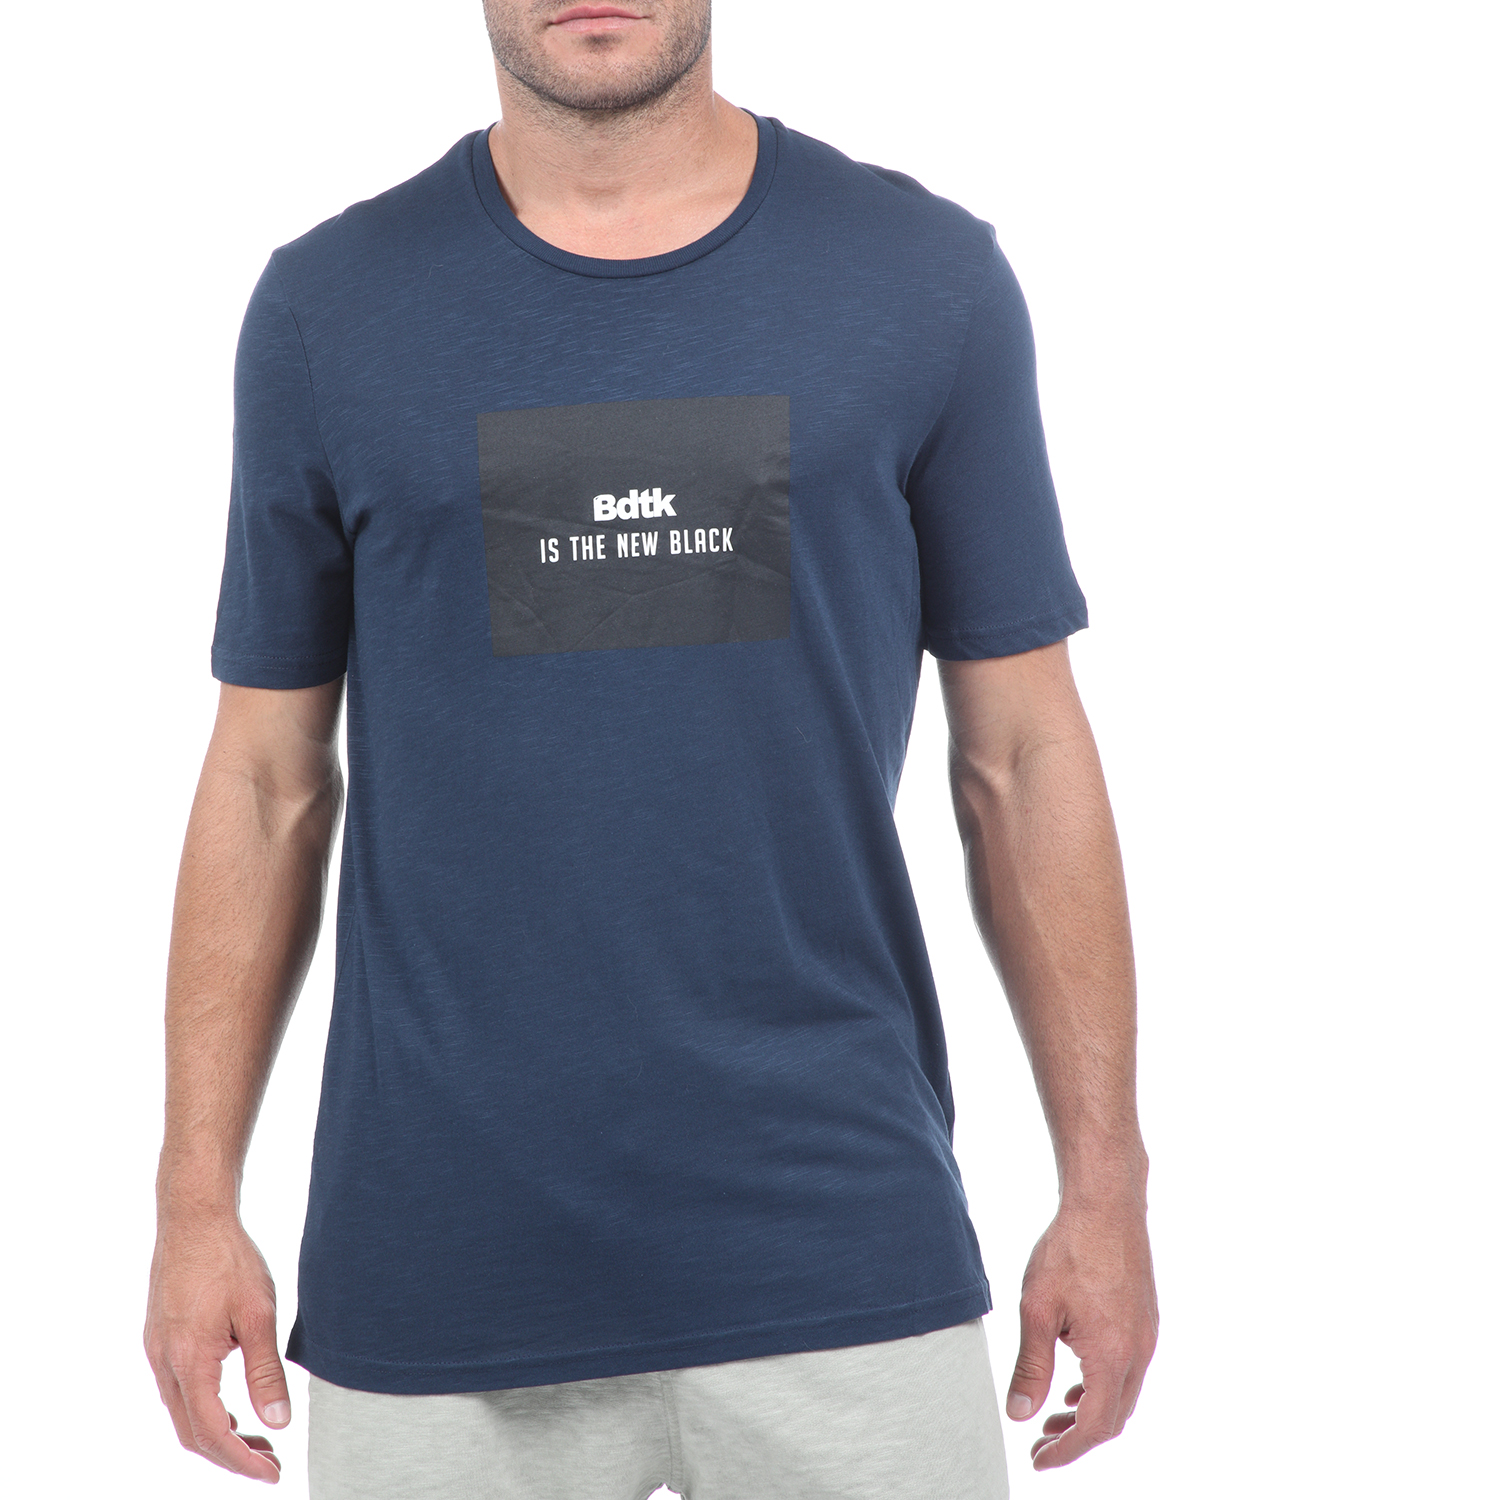 Ανδρικά/Ρούχα/Αθλητικά/T-shirt BODYTALK - Ανδρικό t-shirt BODYTALK μπλε